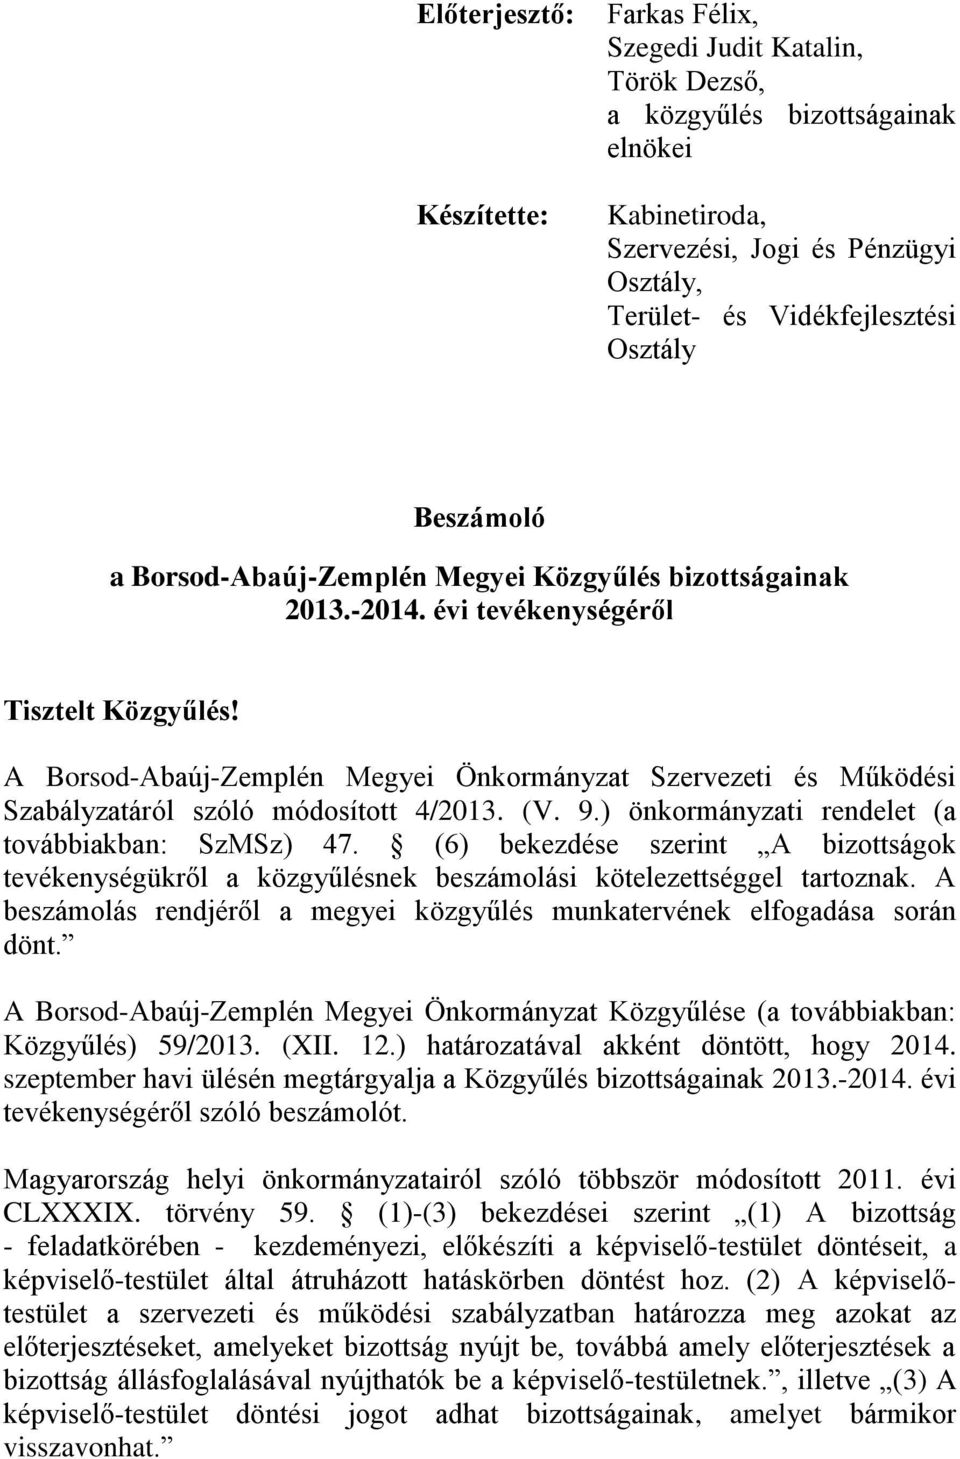 A Borsod-Abaúj-Zemplén Megyei Önkormányzat Szervezeti és Működési Szabályzatáról szóló módosított 4/2013. (V. 9.) önkormányzati rendelet (a továbbiakban: SzMSz) 47.